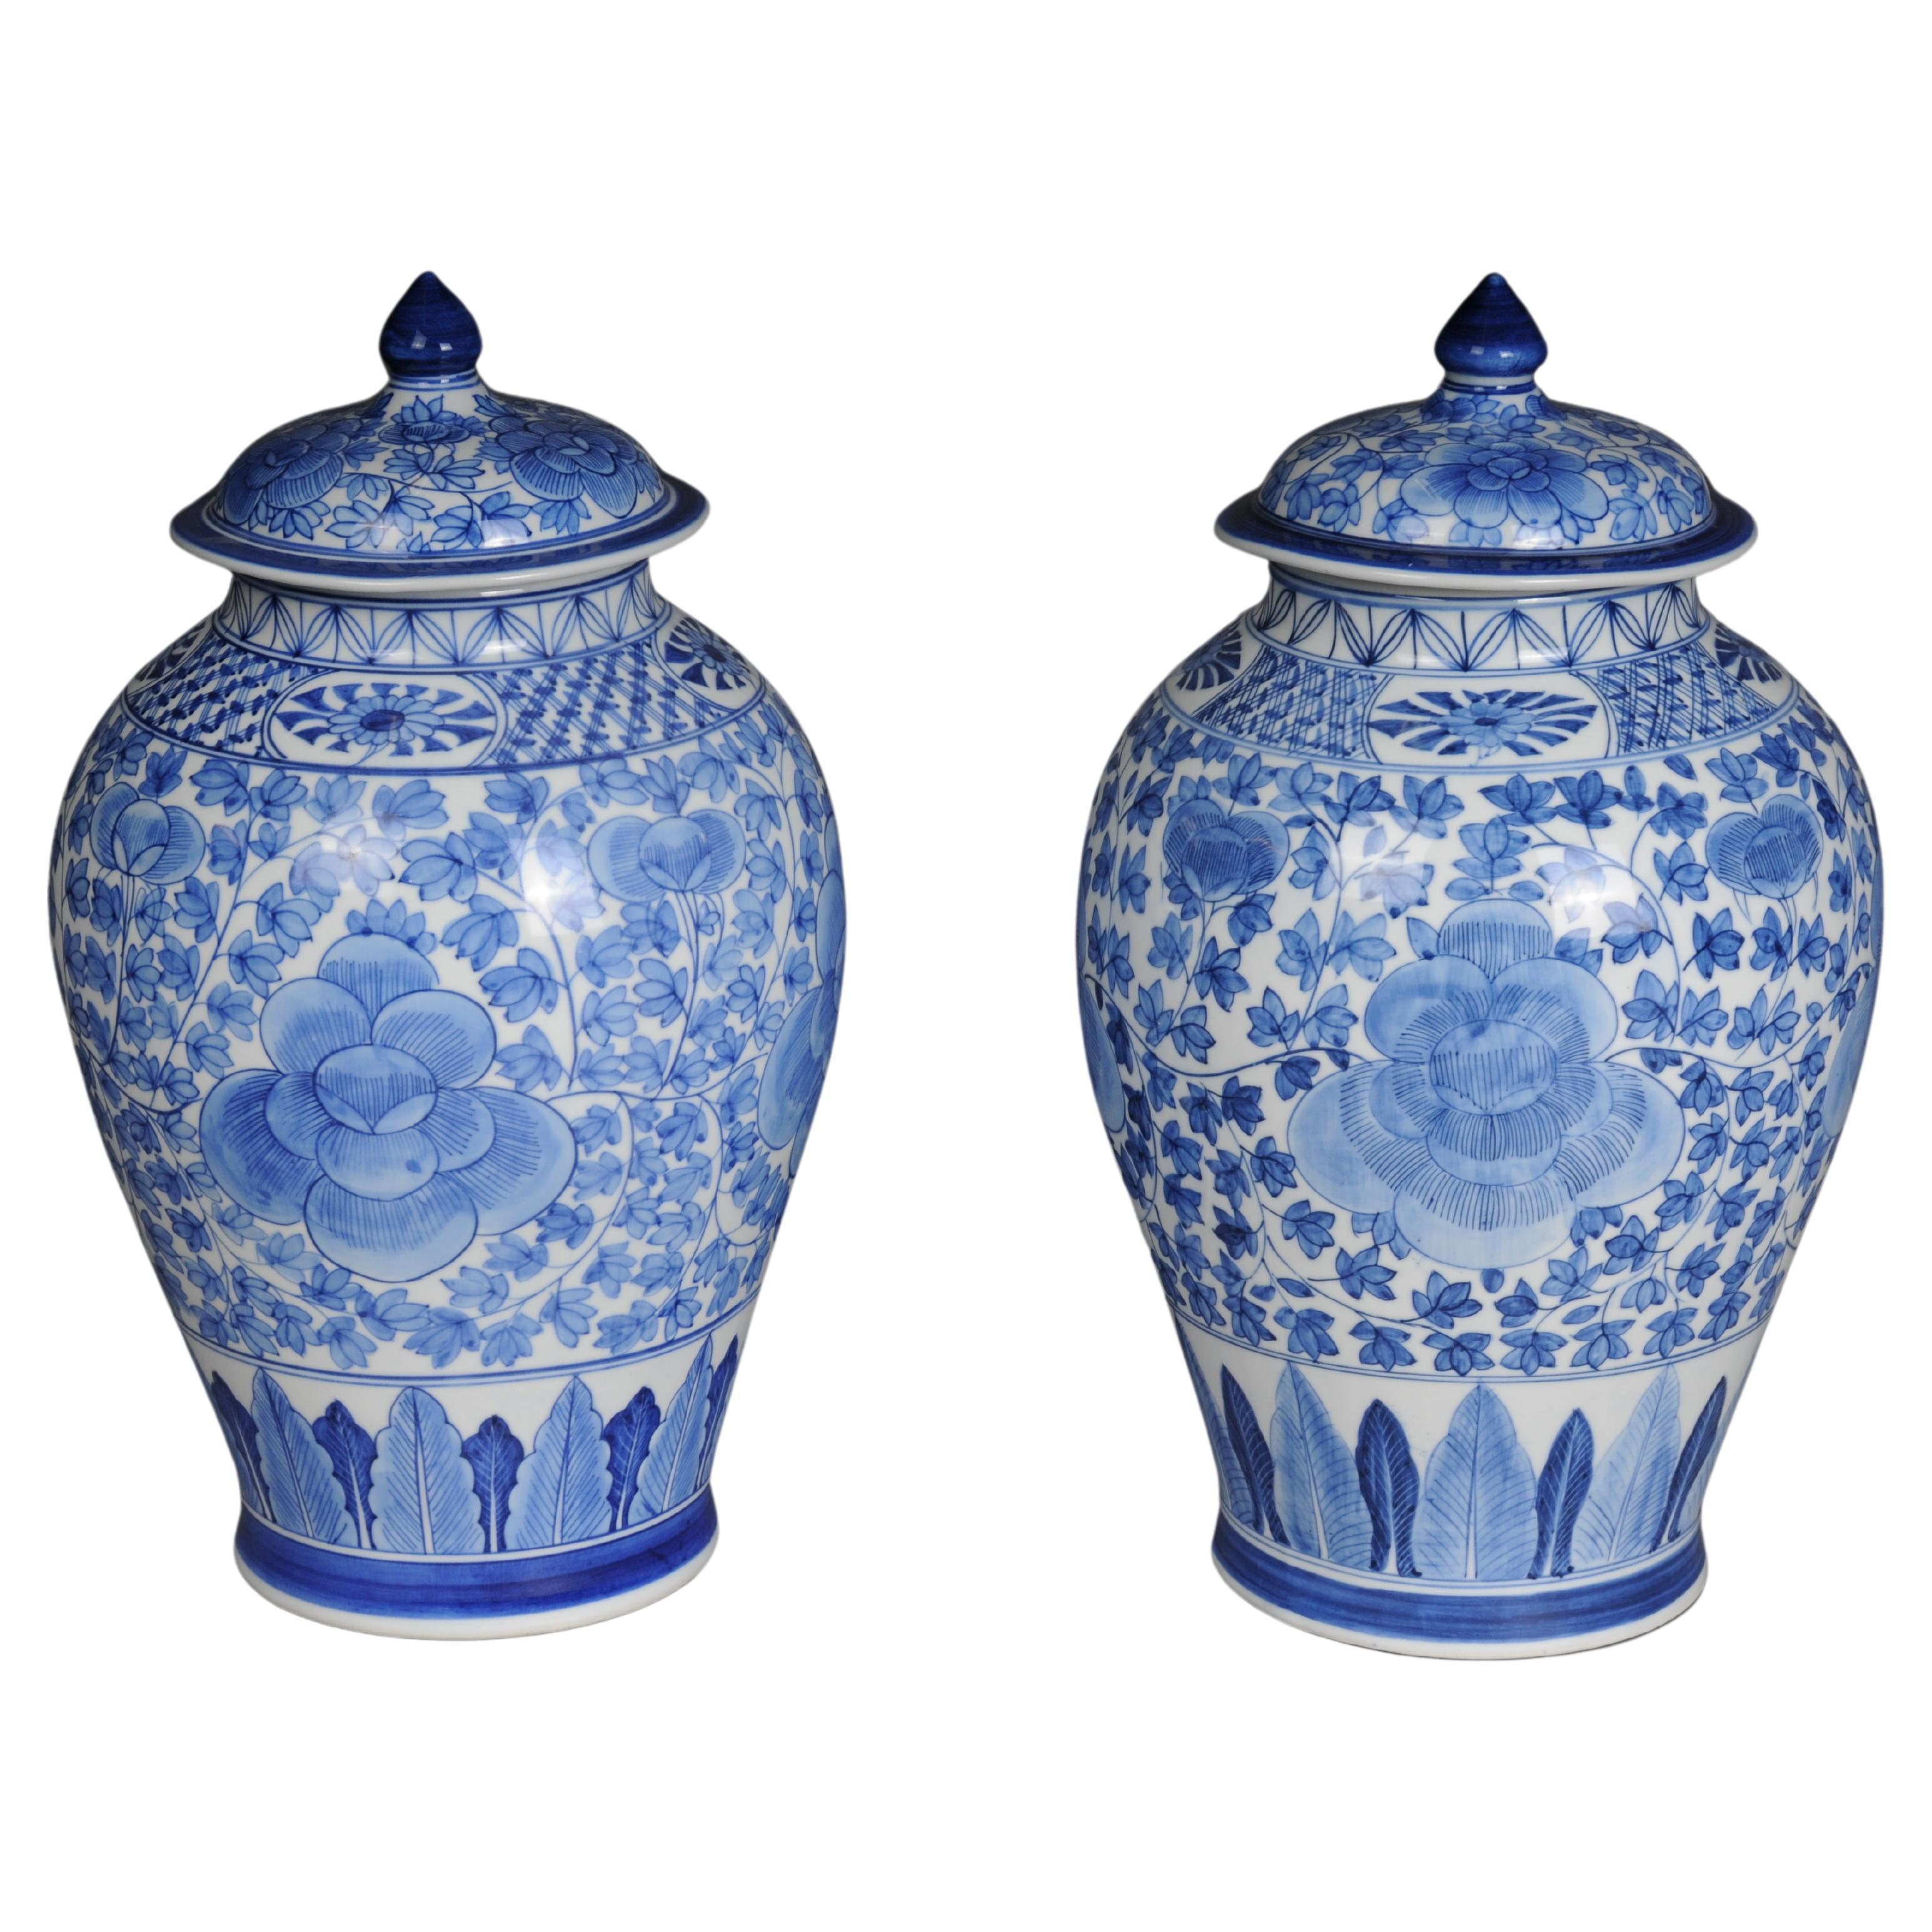 Paire de vases asiatiques à couvercle, porcelaine, 20e siècle.